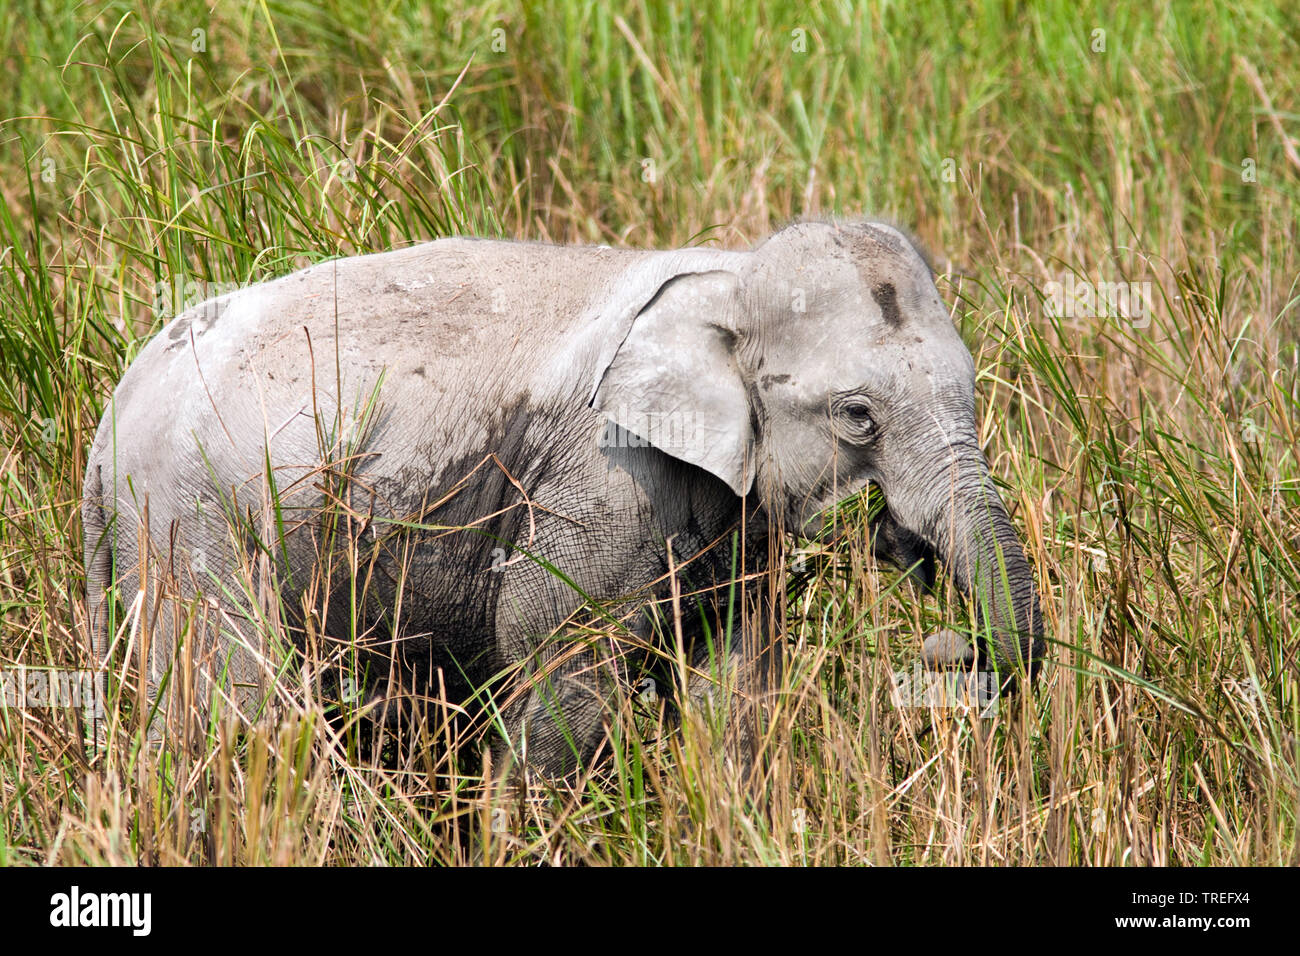 L'éléphant indien (Elephas maximus indicus, Elephas maximus bengalensis), sur l'alimentation, de l'Inde, le parc national de Kaziranga Banque D'Images